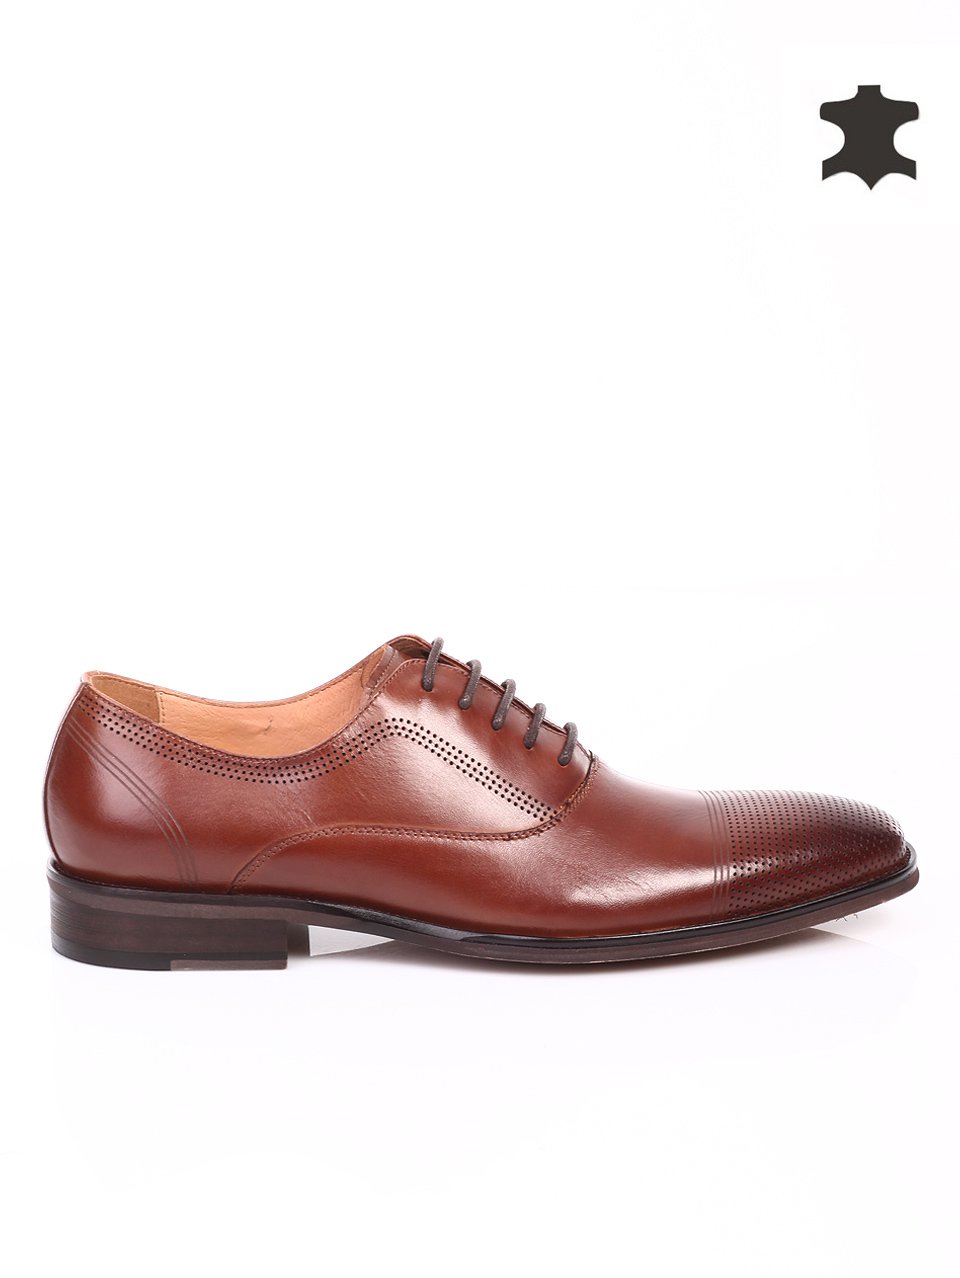 Елегантни мъжки обувки от естествена кожа 7N-15224 brown